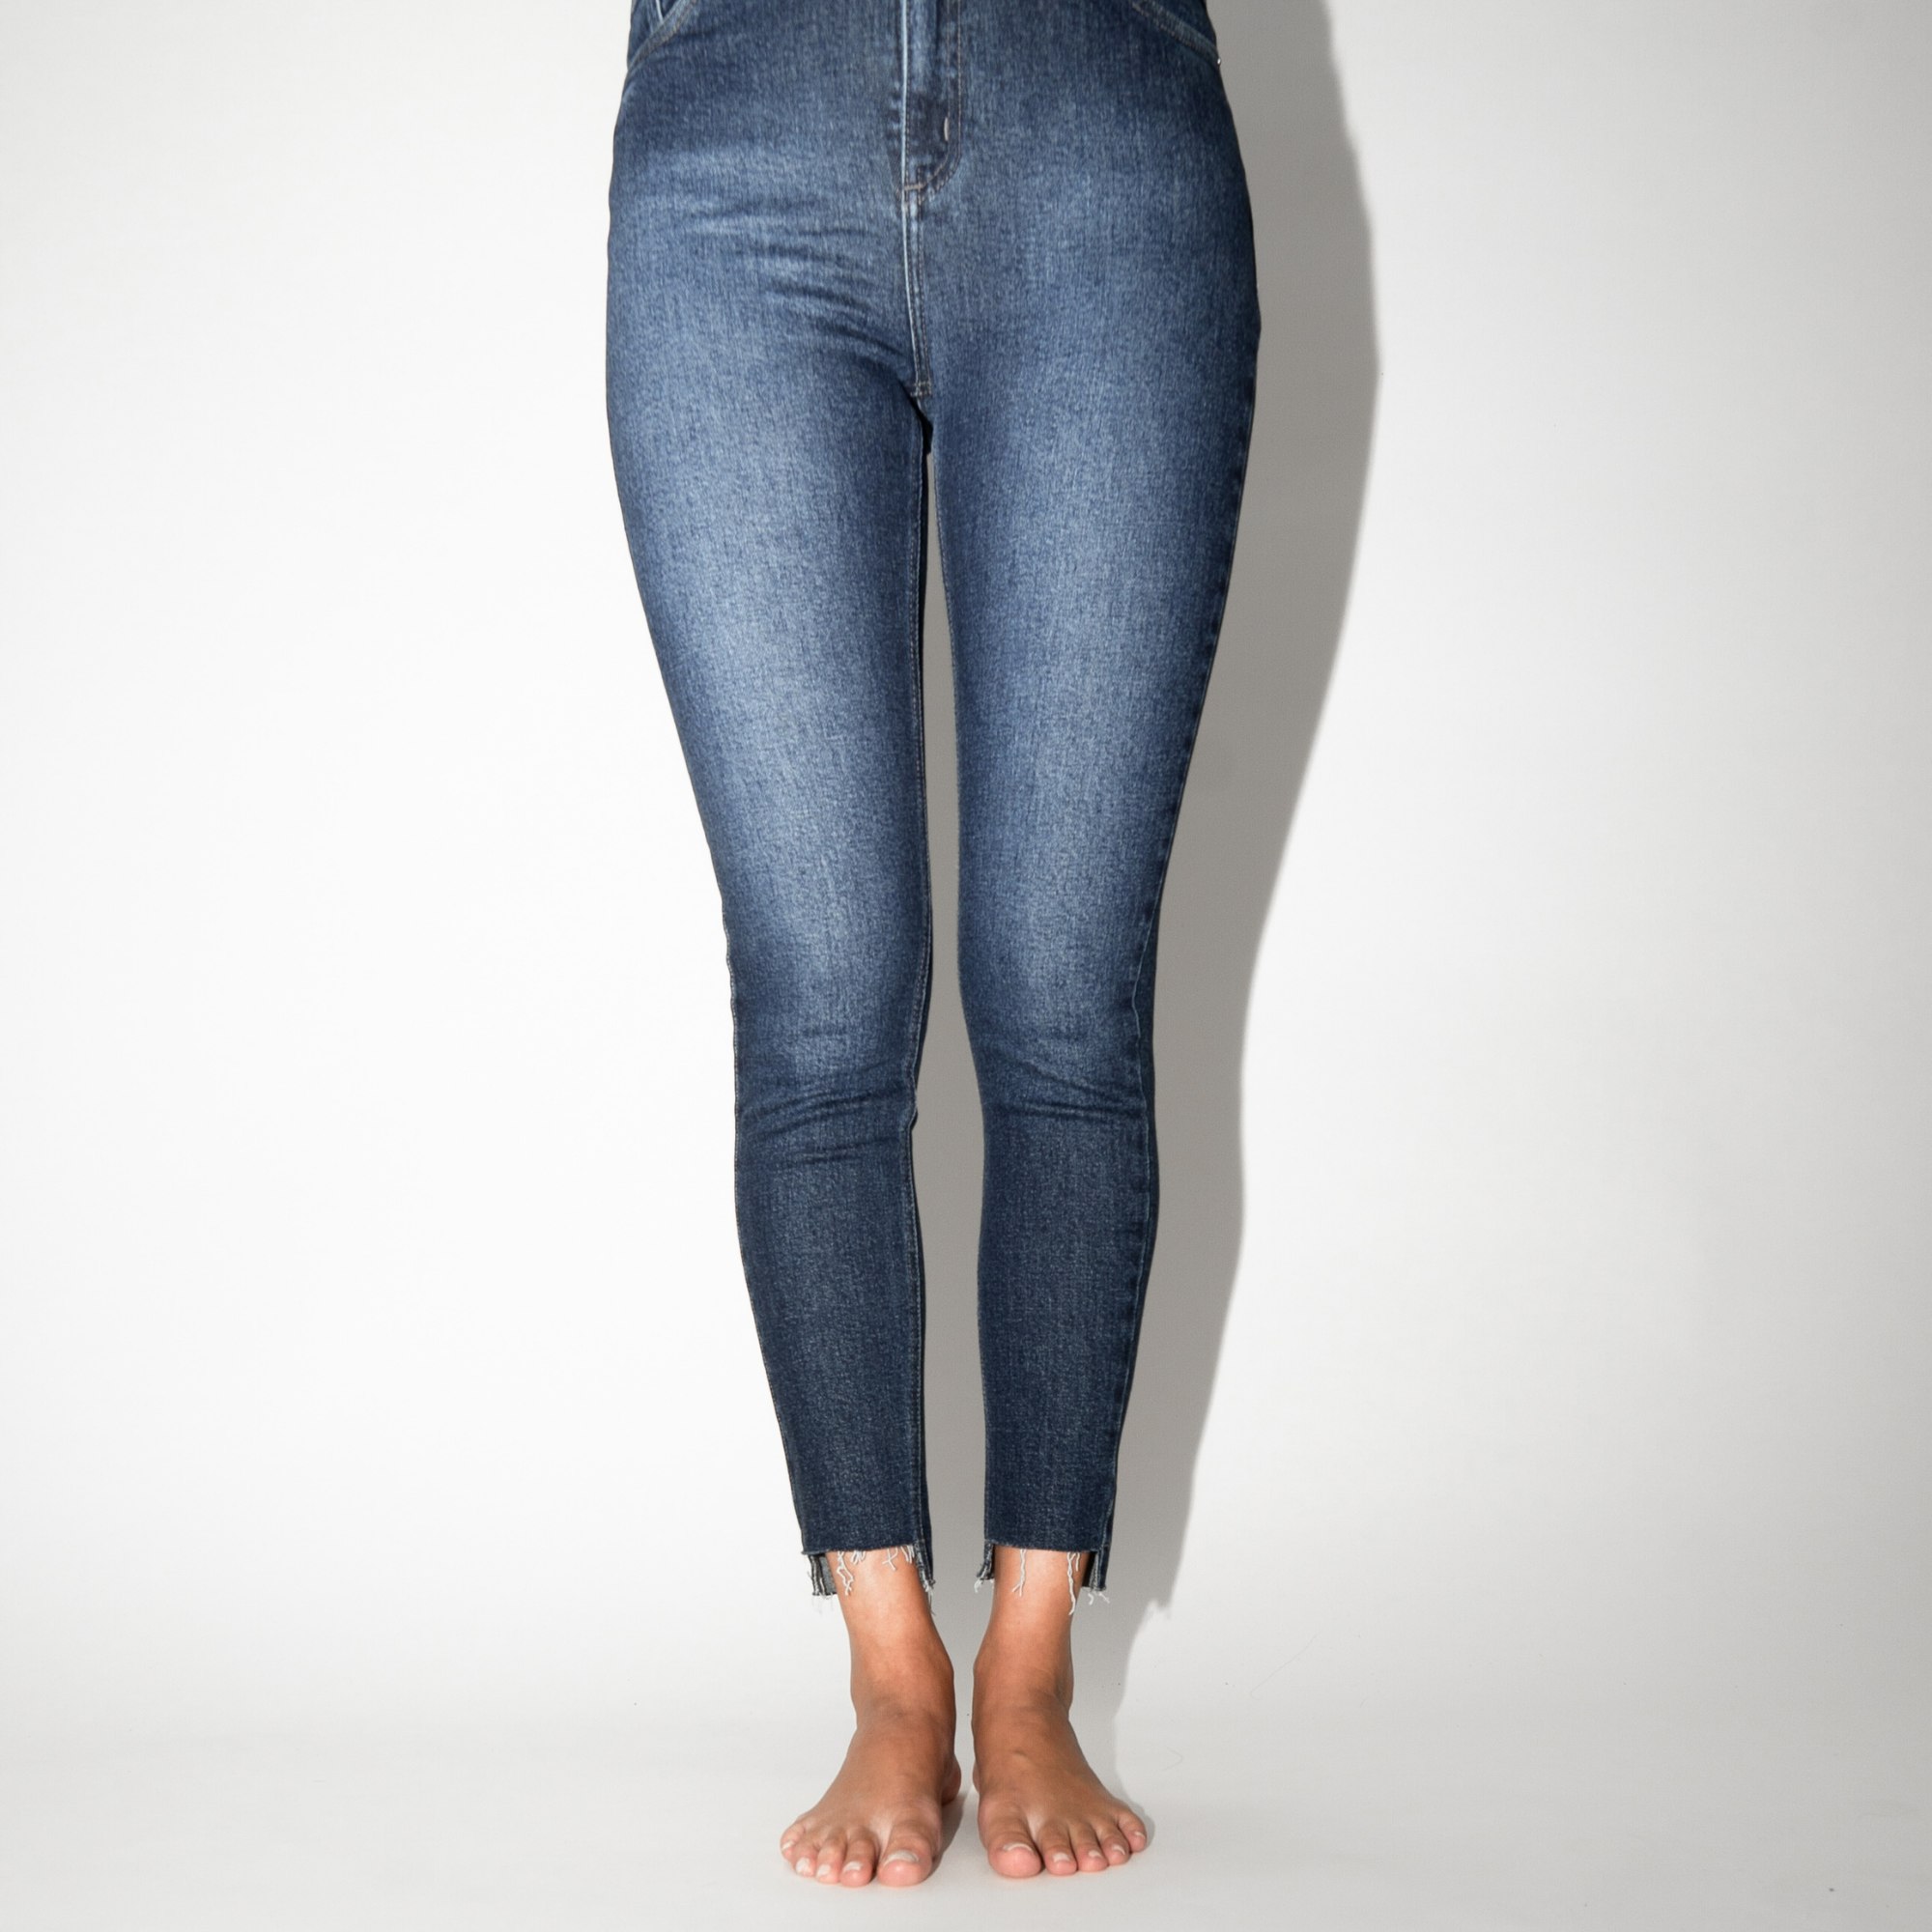 Calça Jeans Skinny com Elastano - Jeans Escuro